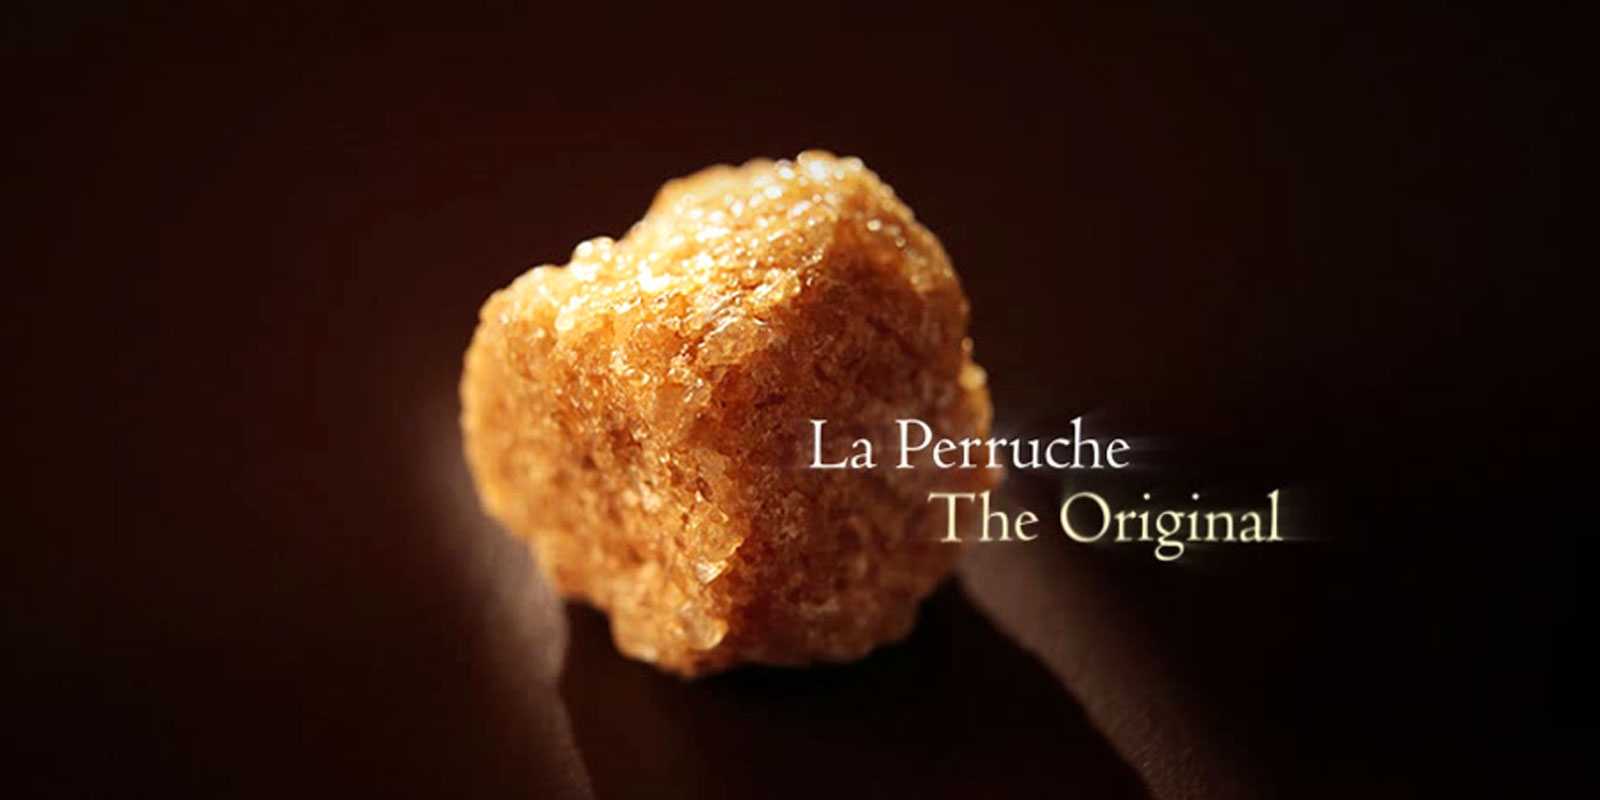 La Perruche - secer od trske La Perruche je izuzetan proizvod, posebnog okusa koji ce oduseviti sve one koji cijene fini i sofisticirani okus. Jednostavno, izaziva cisto zadovoljstvo u vasa cula. La Perruche dolazi u obliku nepravilnih secernih grudica bijele ili zlatno smede boje. Kristalni oblik u sejkeru poznat i kao kasonada.